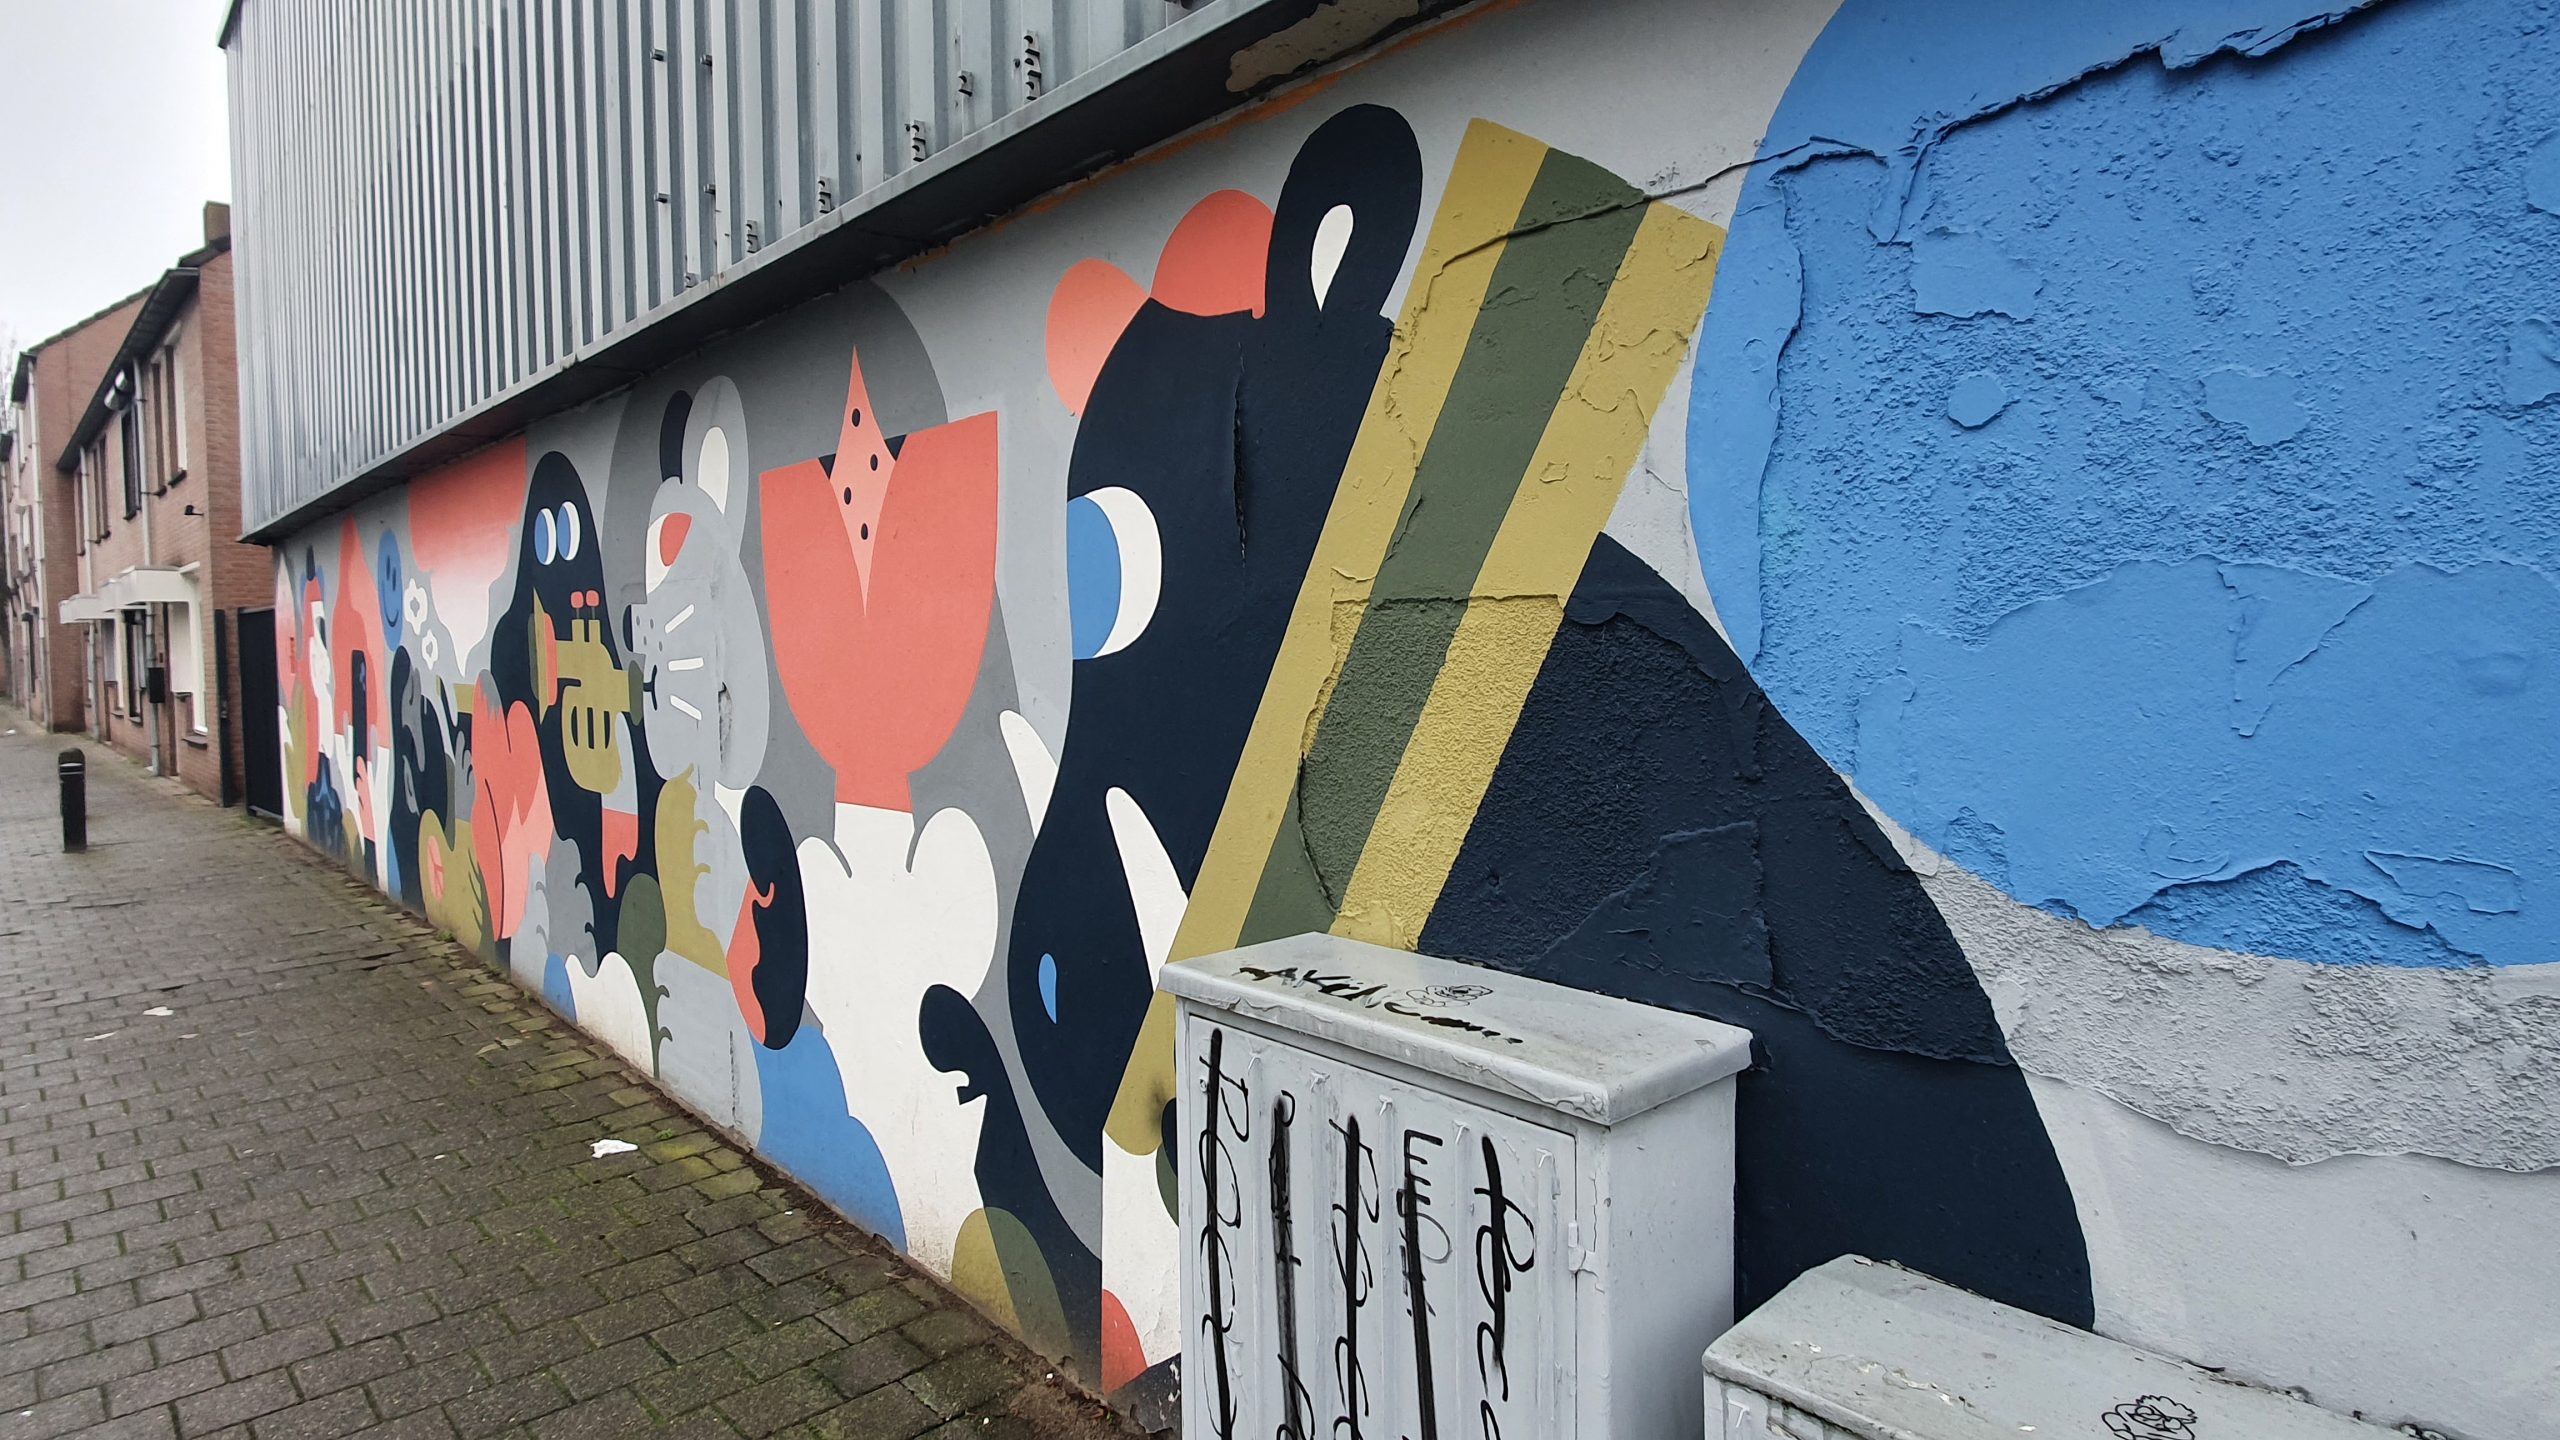 Wandeling langs Blind Walls in Breda